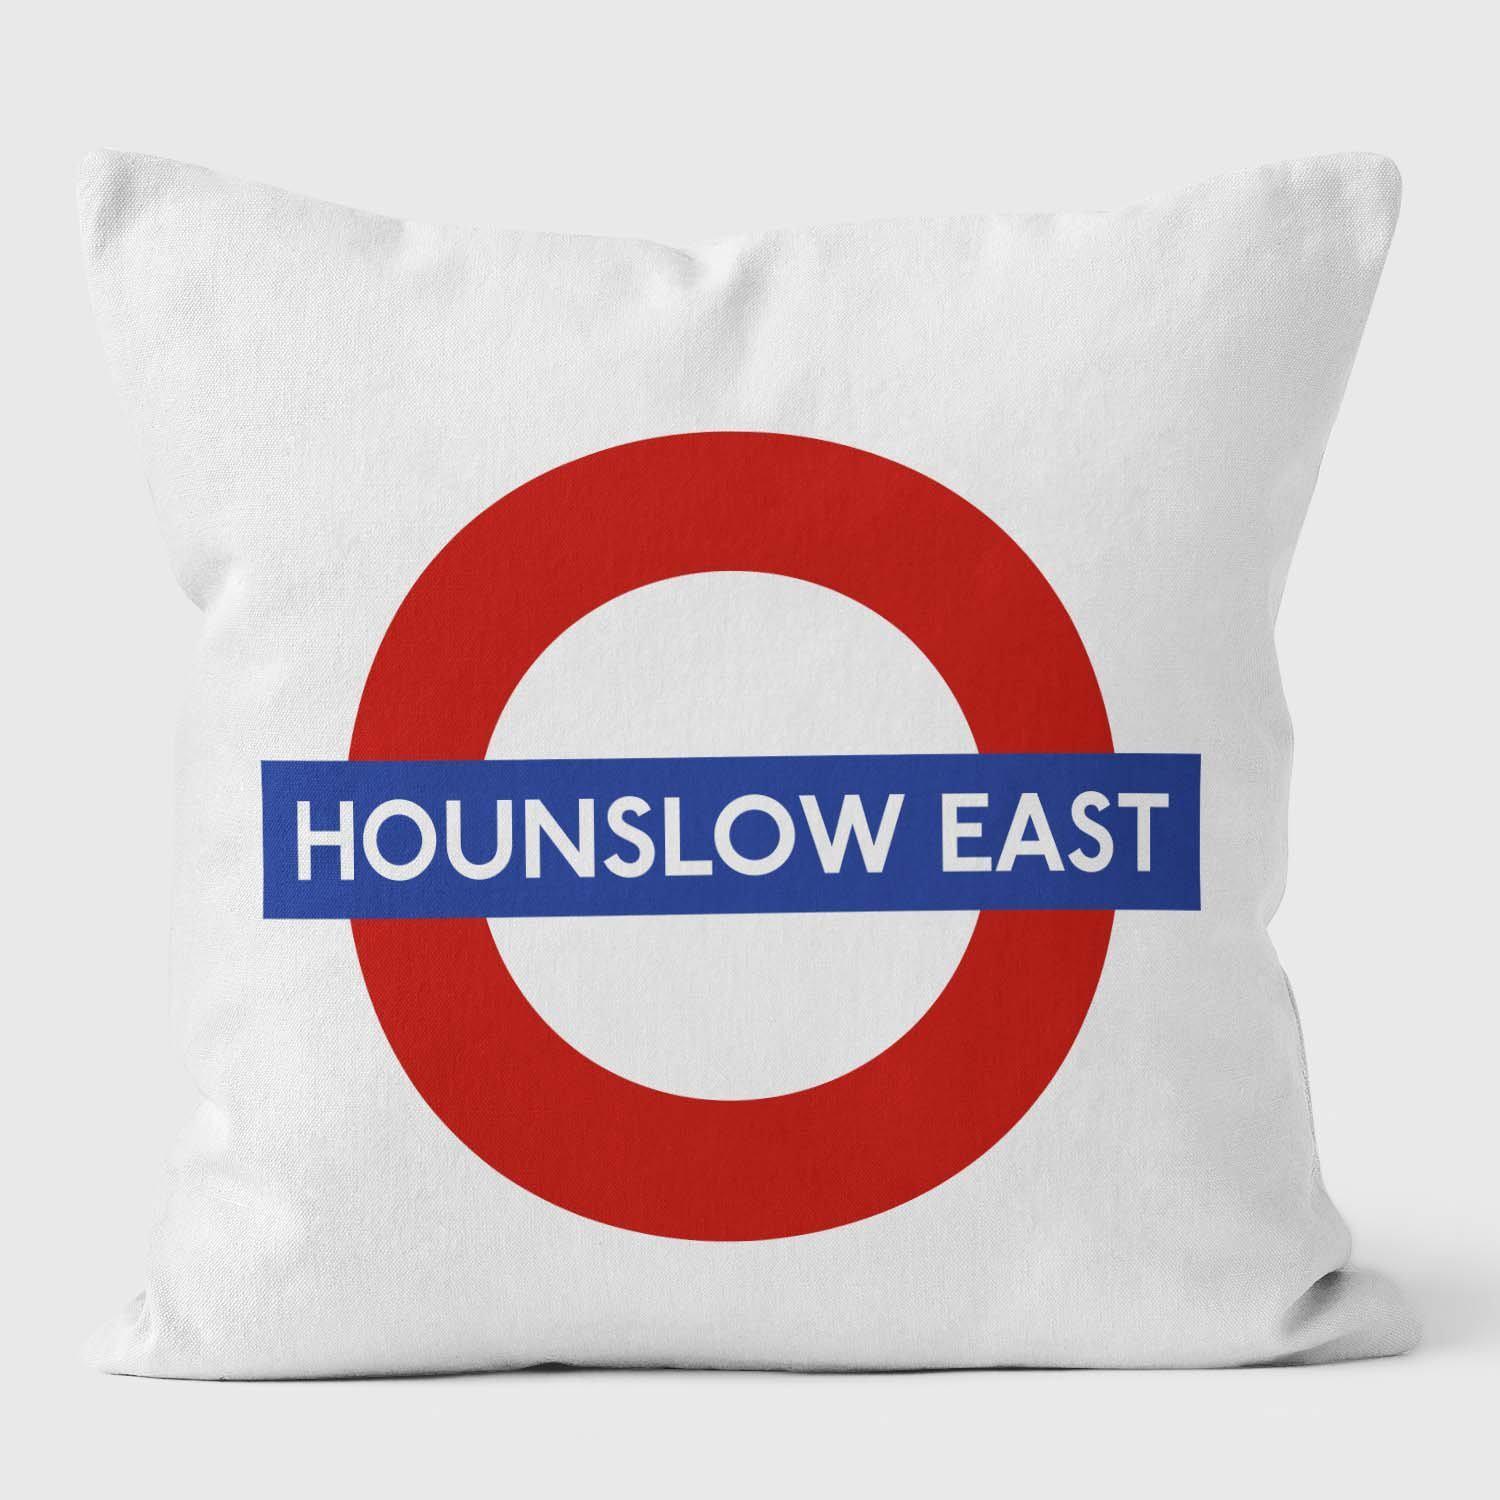 Hounslow East London Underground Tube Station Roundel Cushion - Handmade Cushions UK - WeLoveCushions